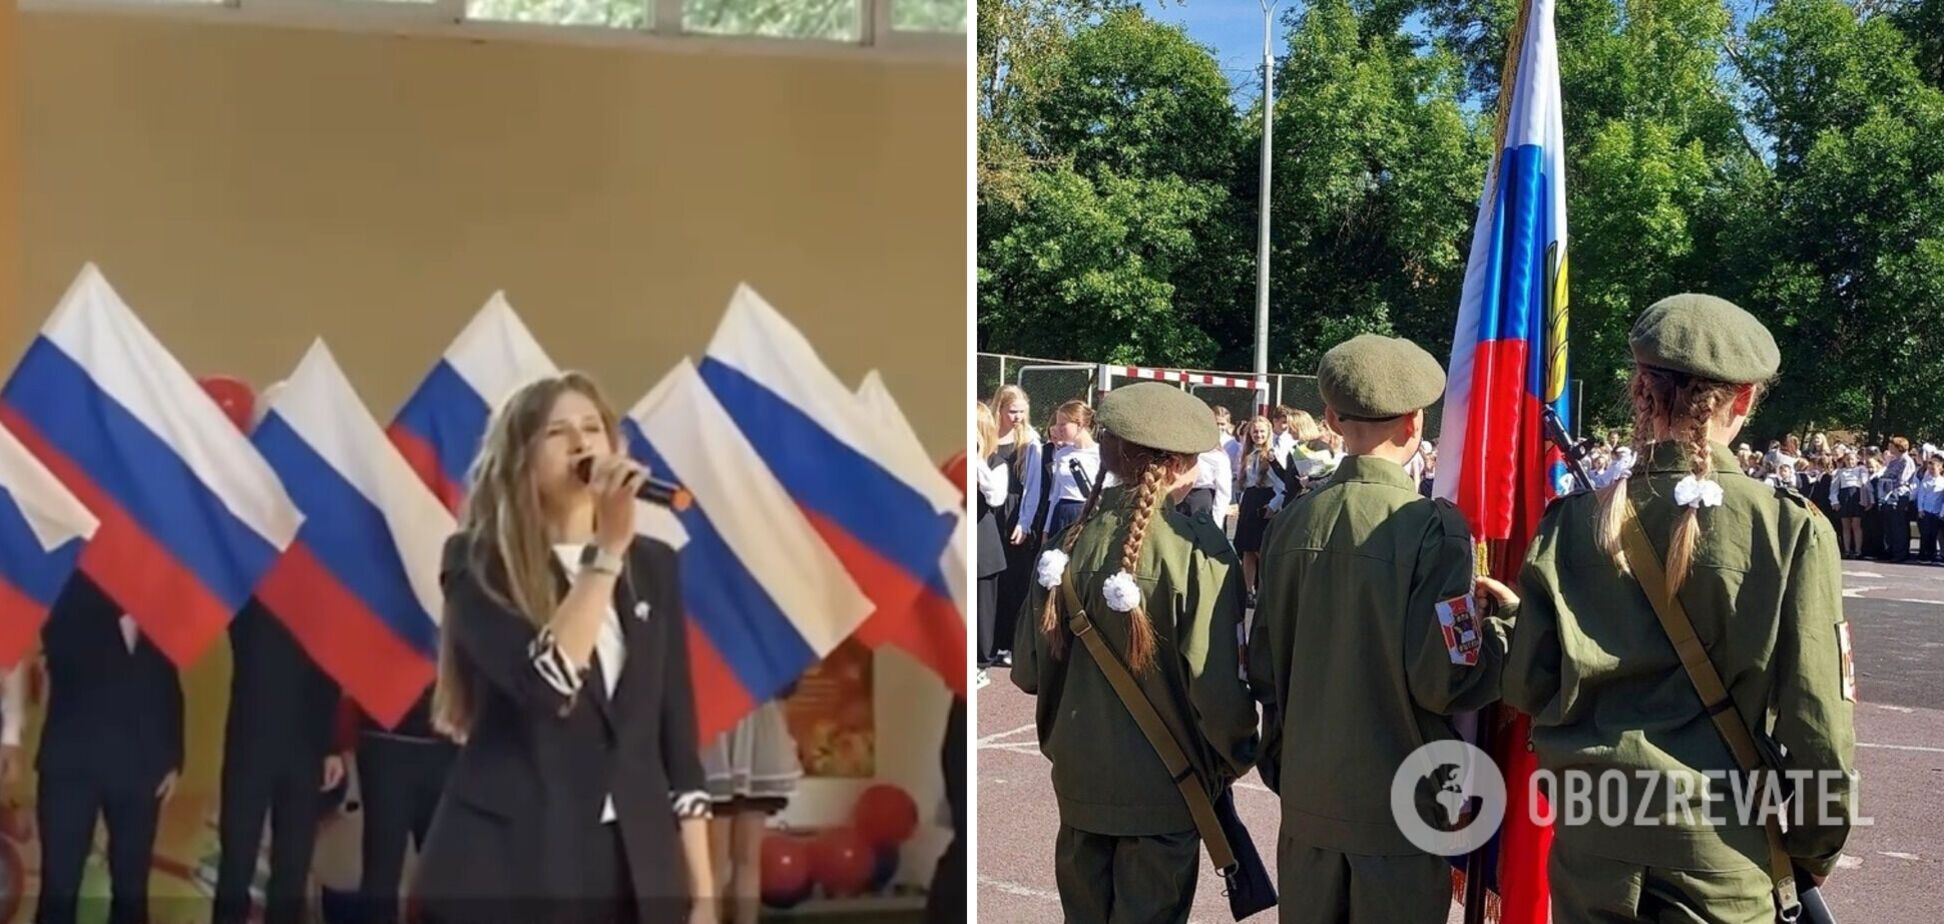 Зошити з 'вагнерами', діти у військовій формі та пропаганда: як у Росії перетворили День знань на 'побєдобєсіє'